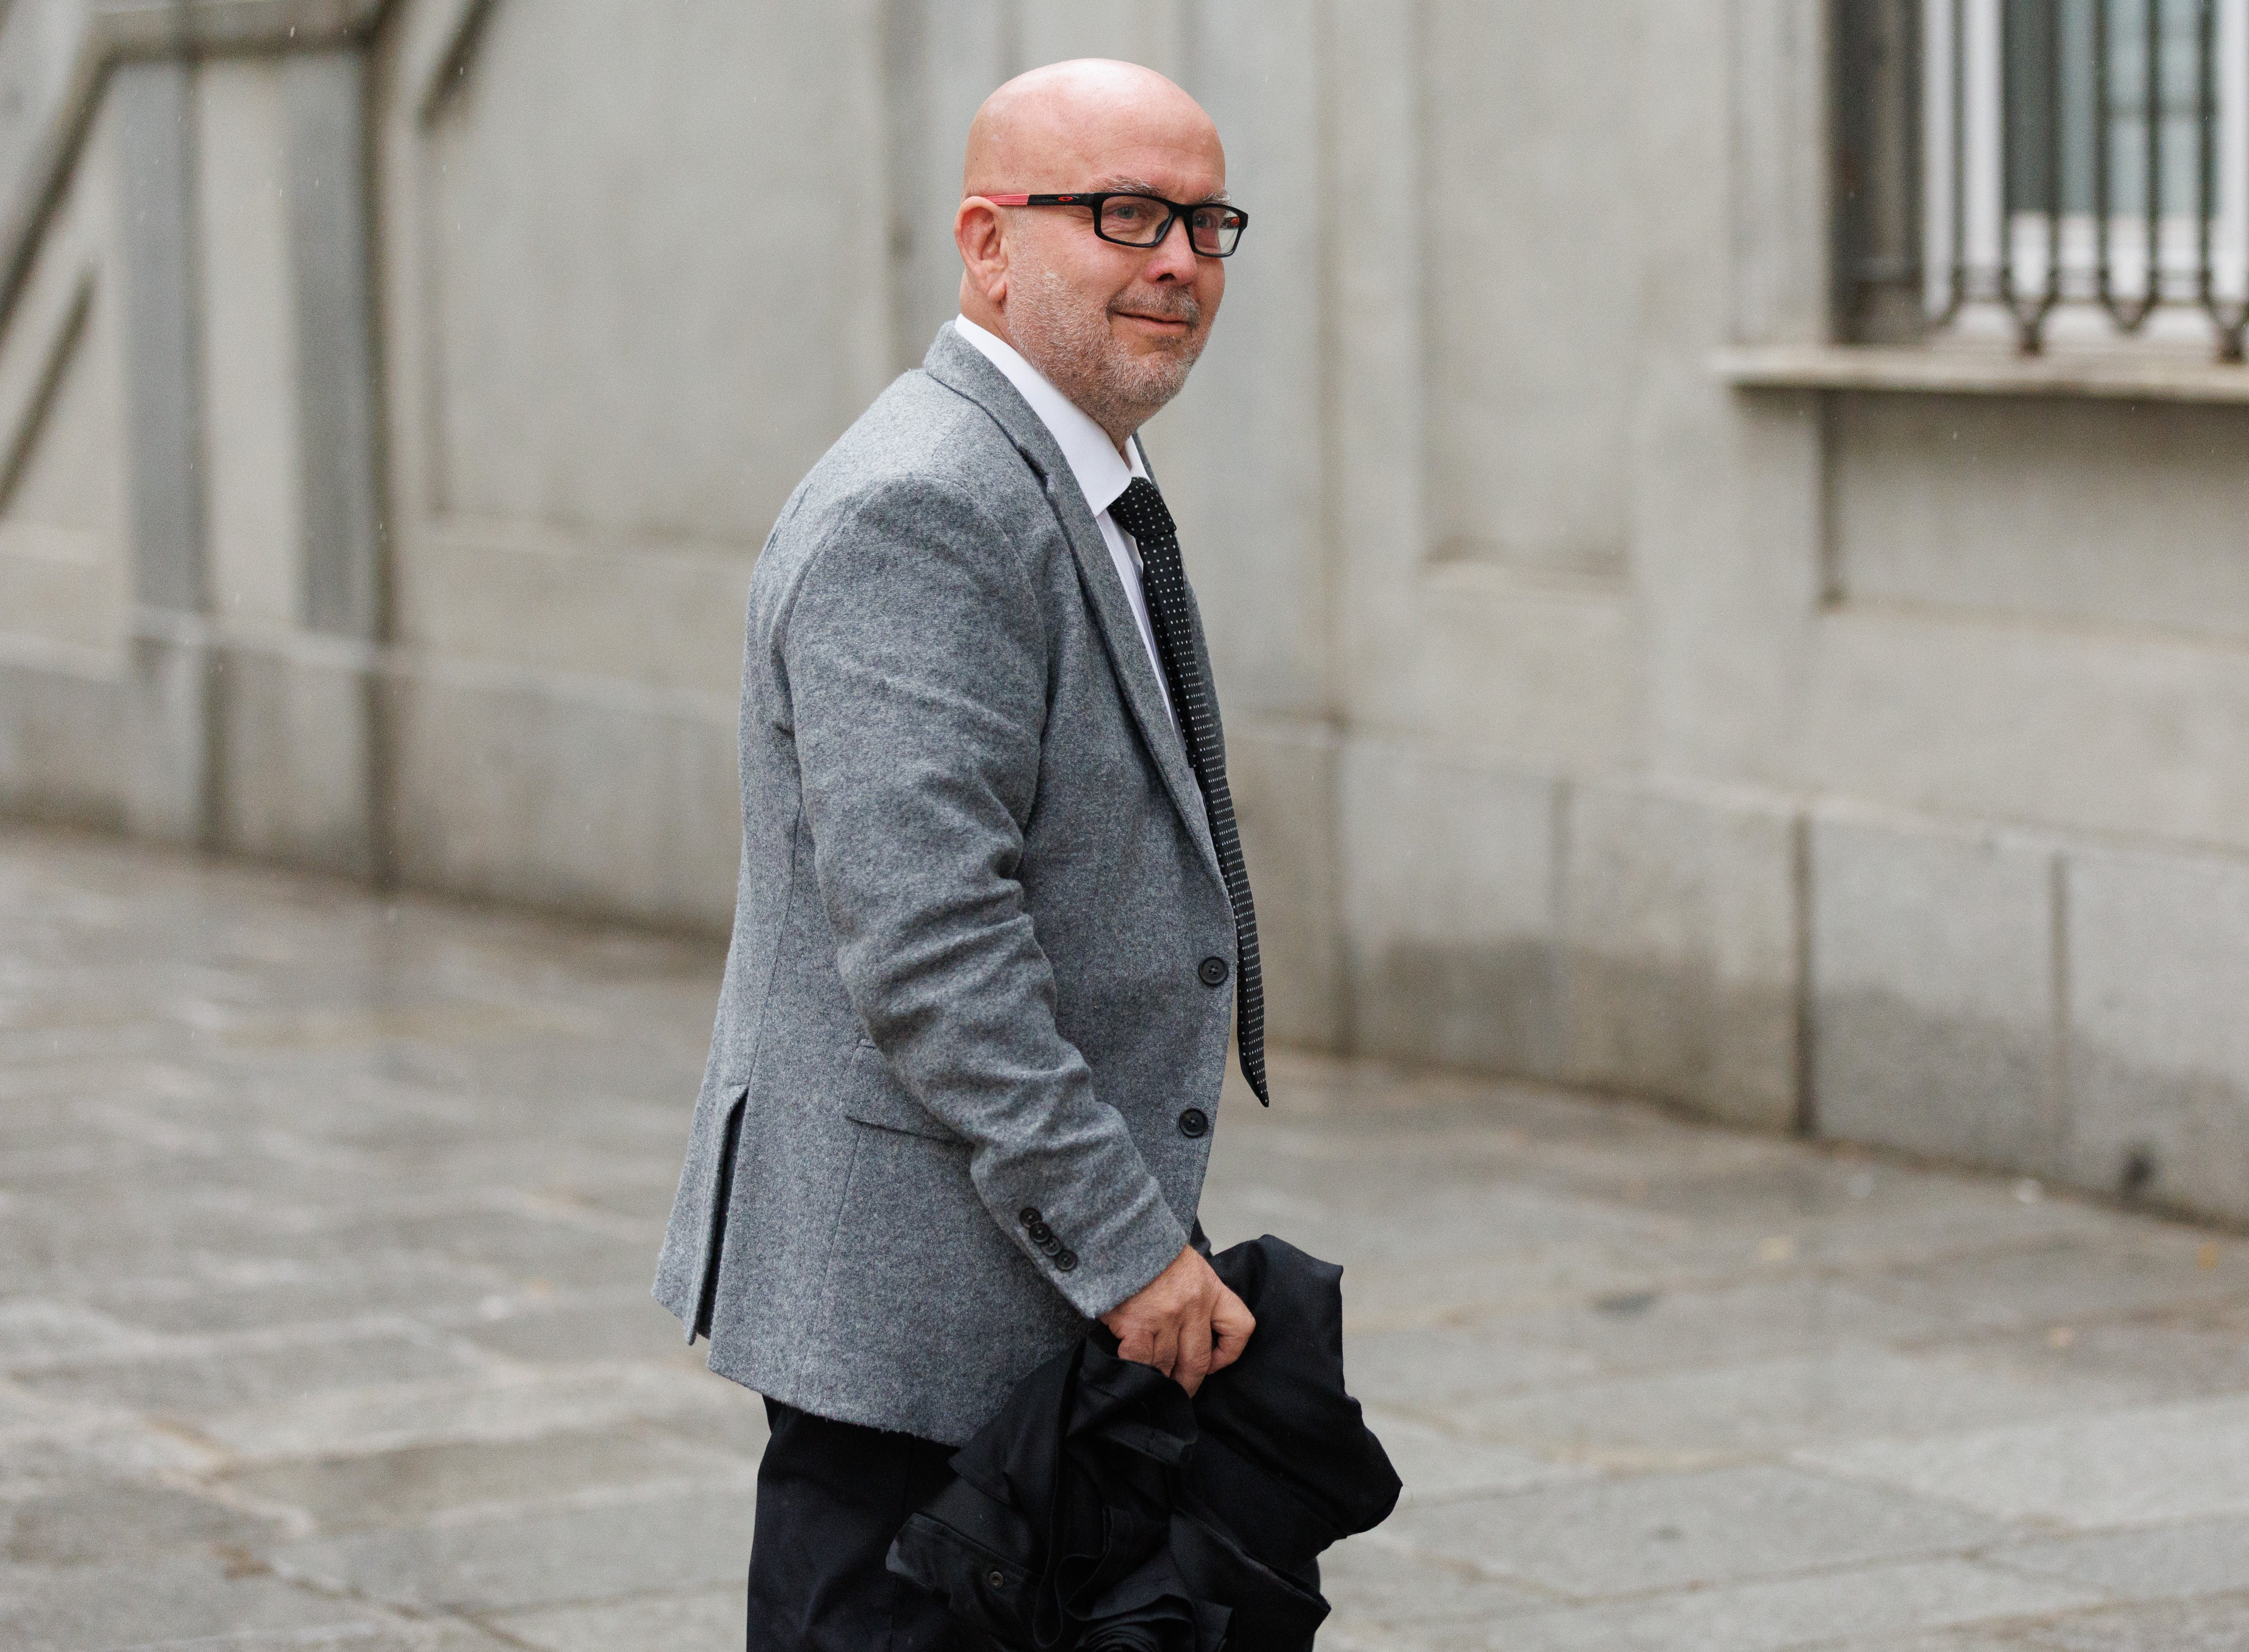 Boye reclama al Supremo que se anule el procesamiento de Puigdemont: "Hay un embrollo penal"